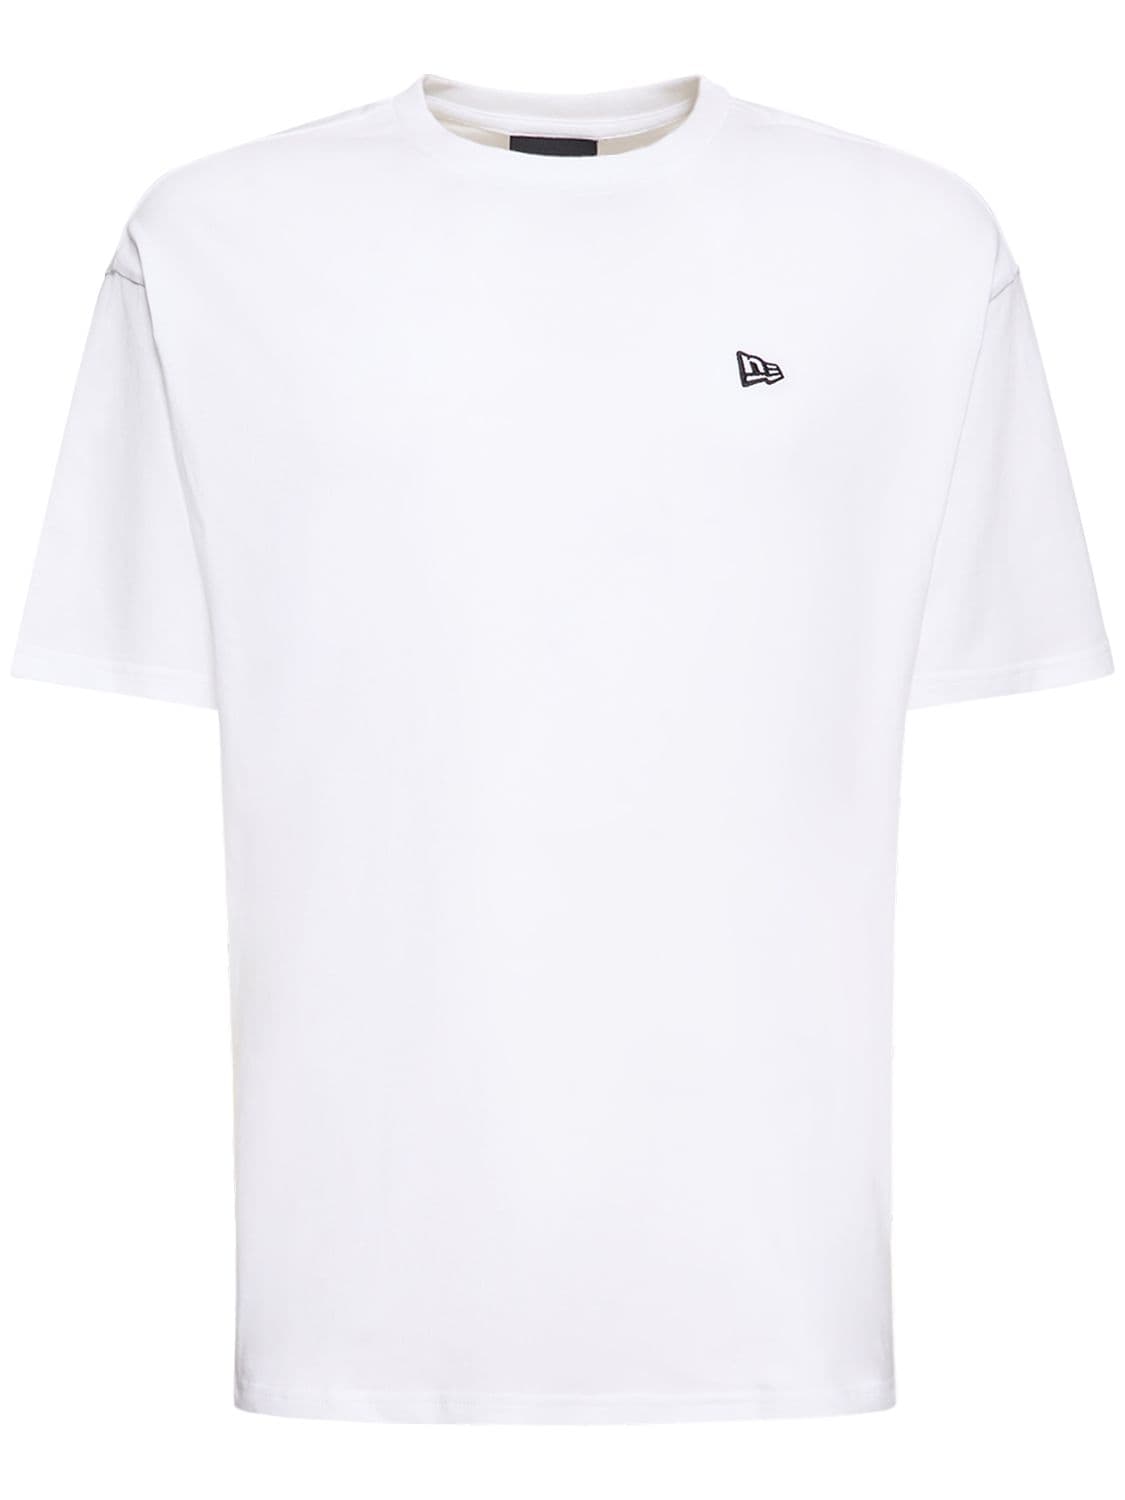 NEW ERA CAP New Era Heritage Pinstripe T-Shirt In Beige-Neutral for Men